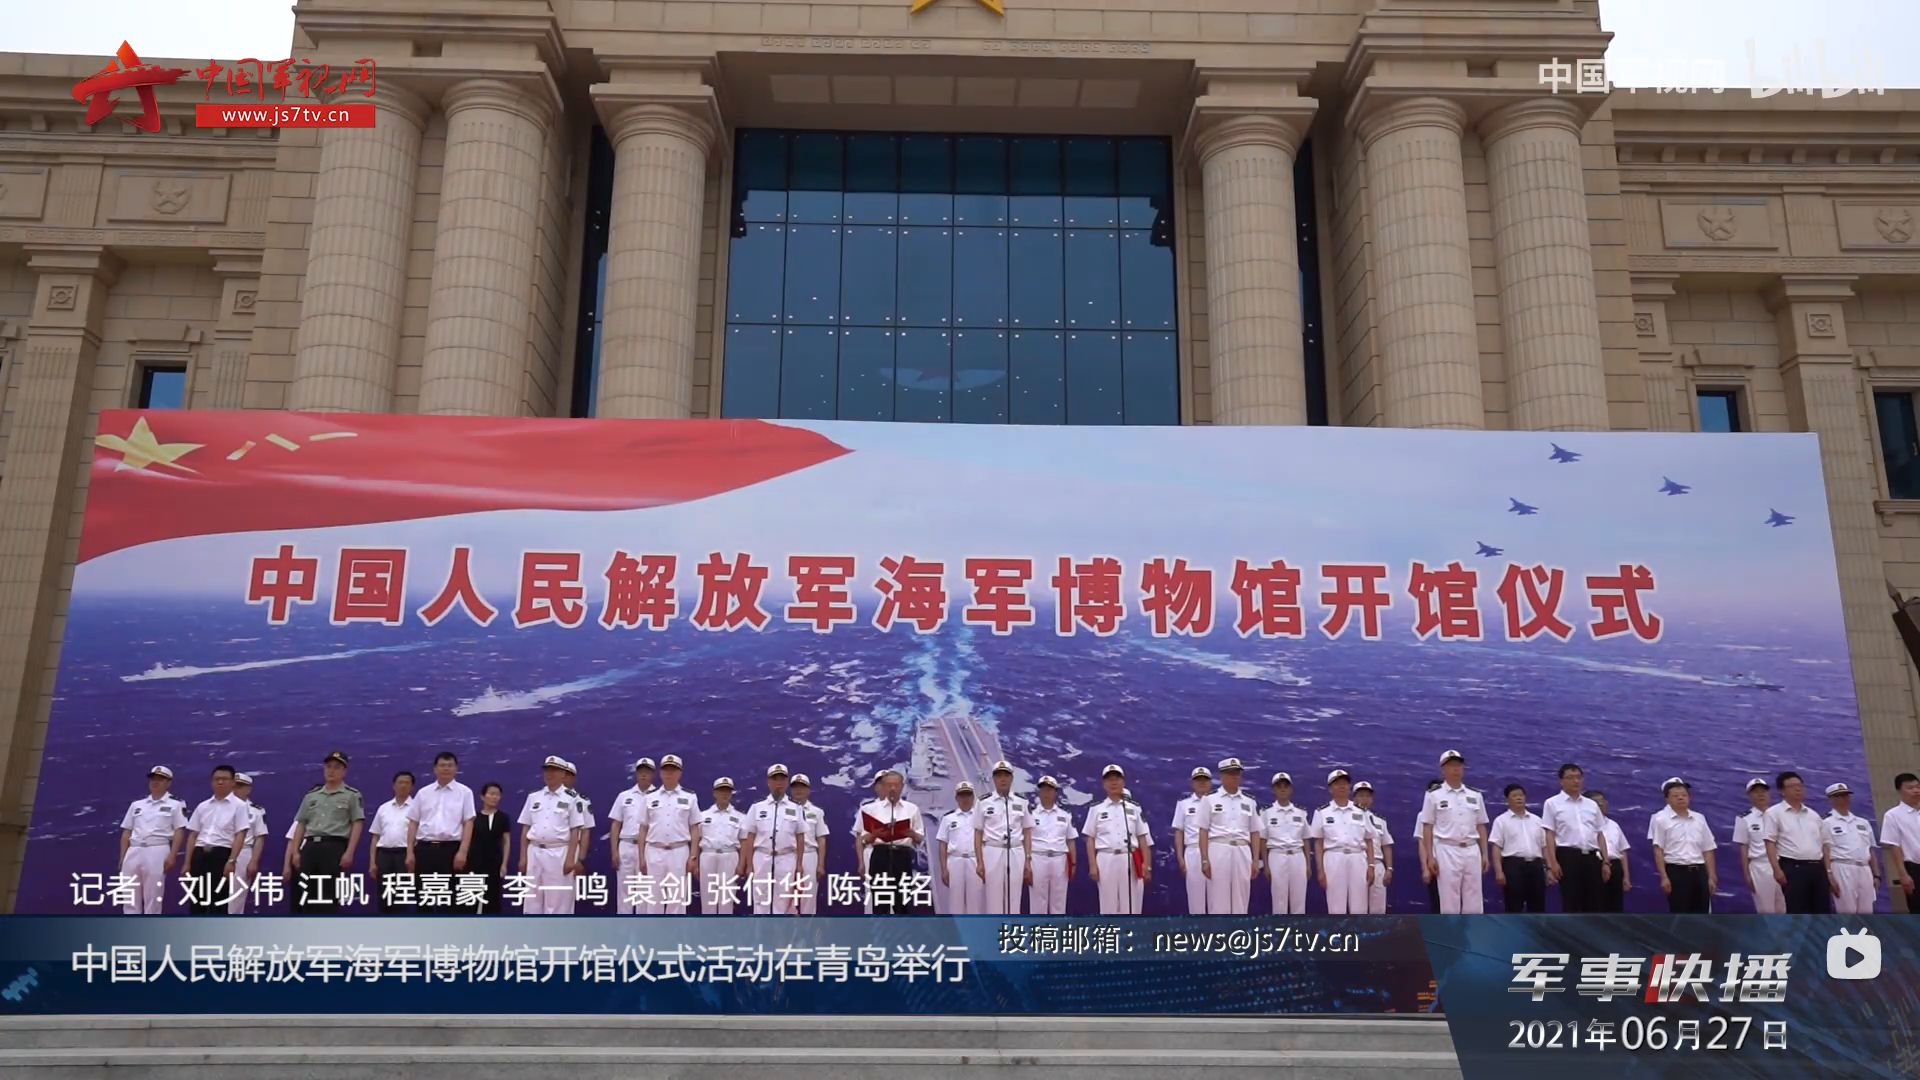 中国海军博物馆党庆开馆南沙海战功勋战舰被拆毁引争议 图 多维新闻 中国